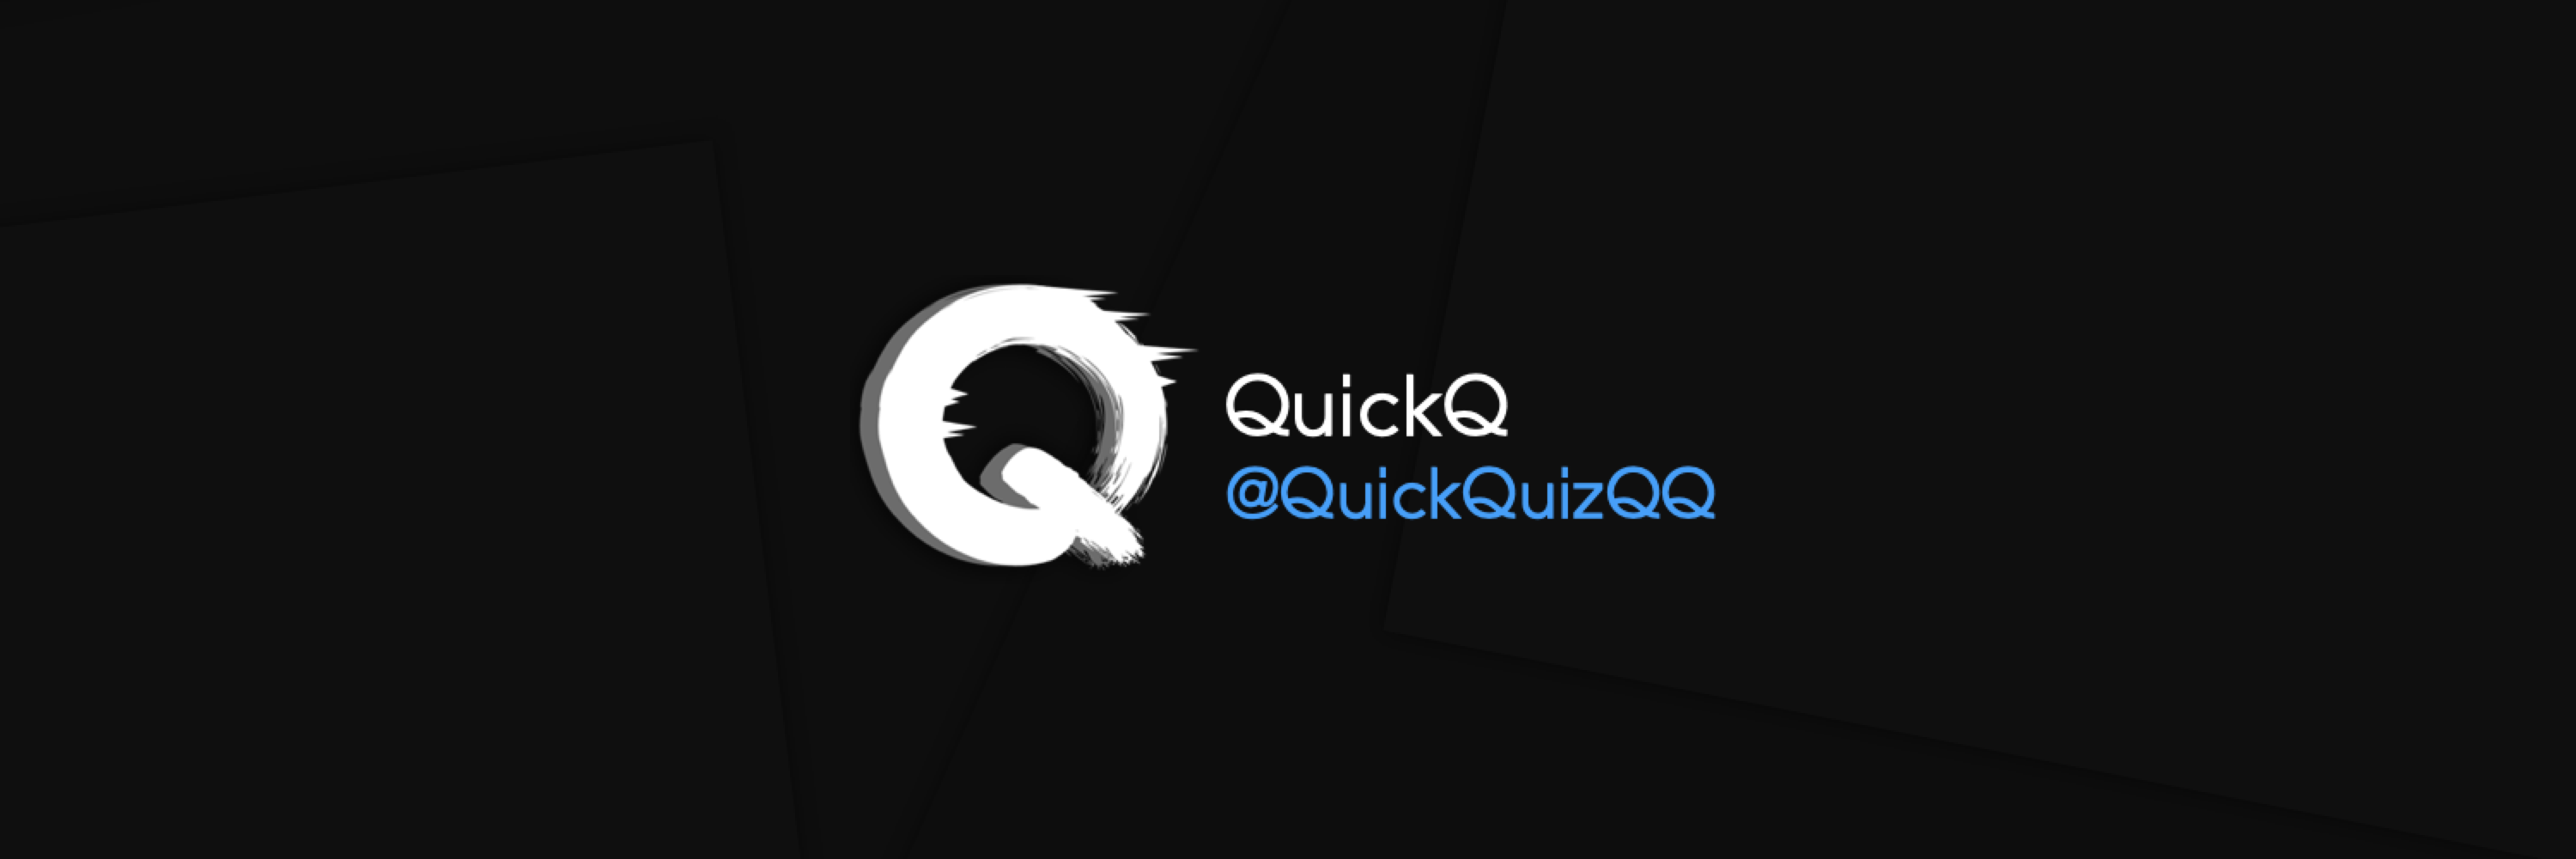 QuickQ